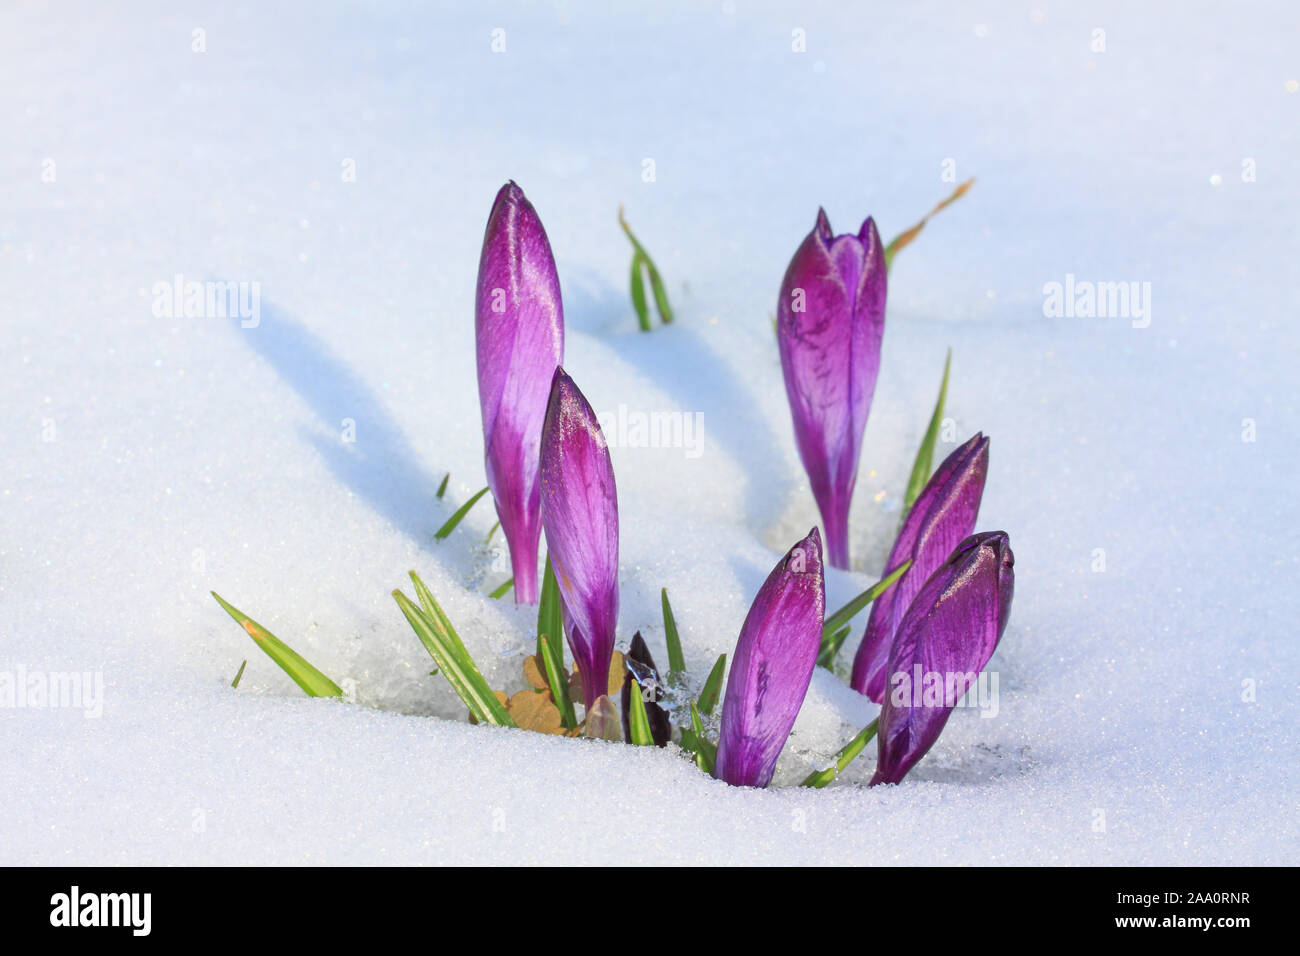 Krokus (Crocus neapolitanus), geschlossene Blüten schieben sich durch den Schnee Stock Photo